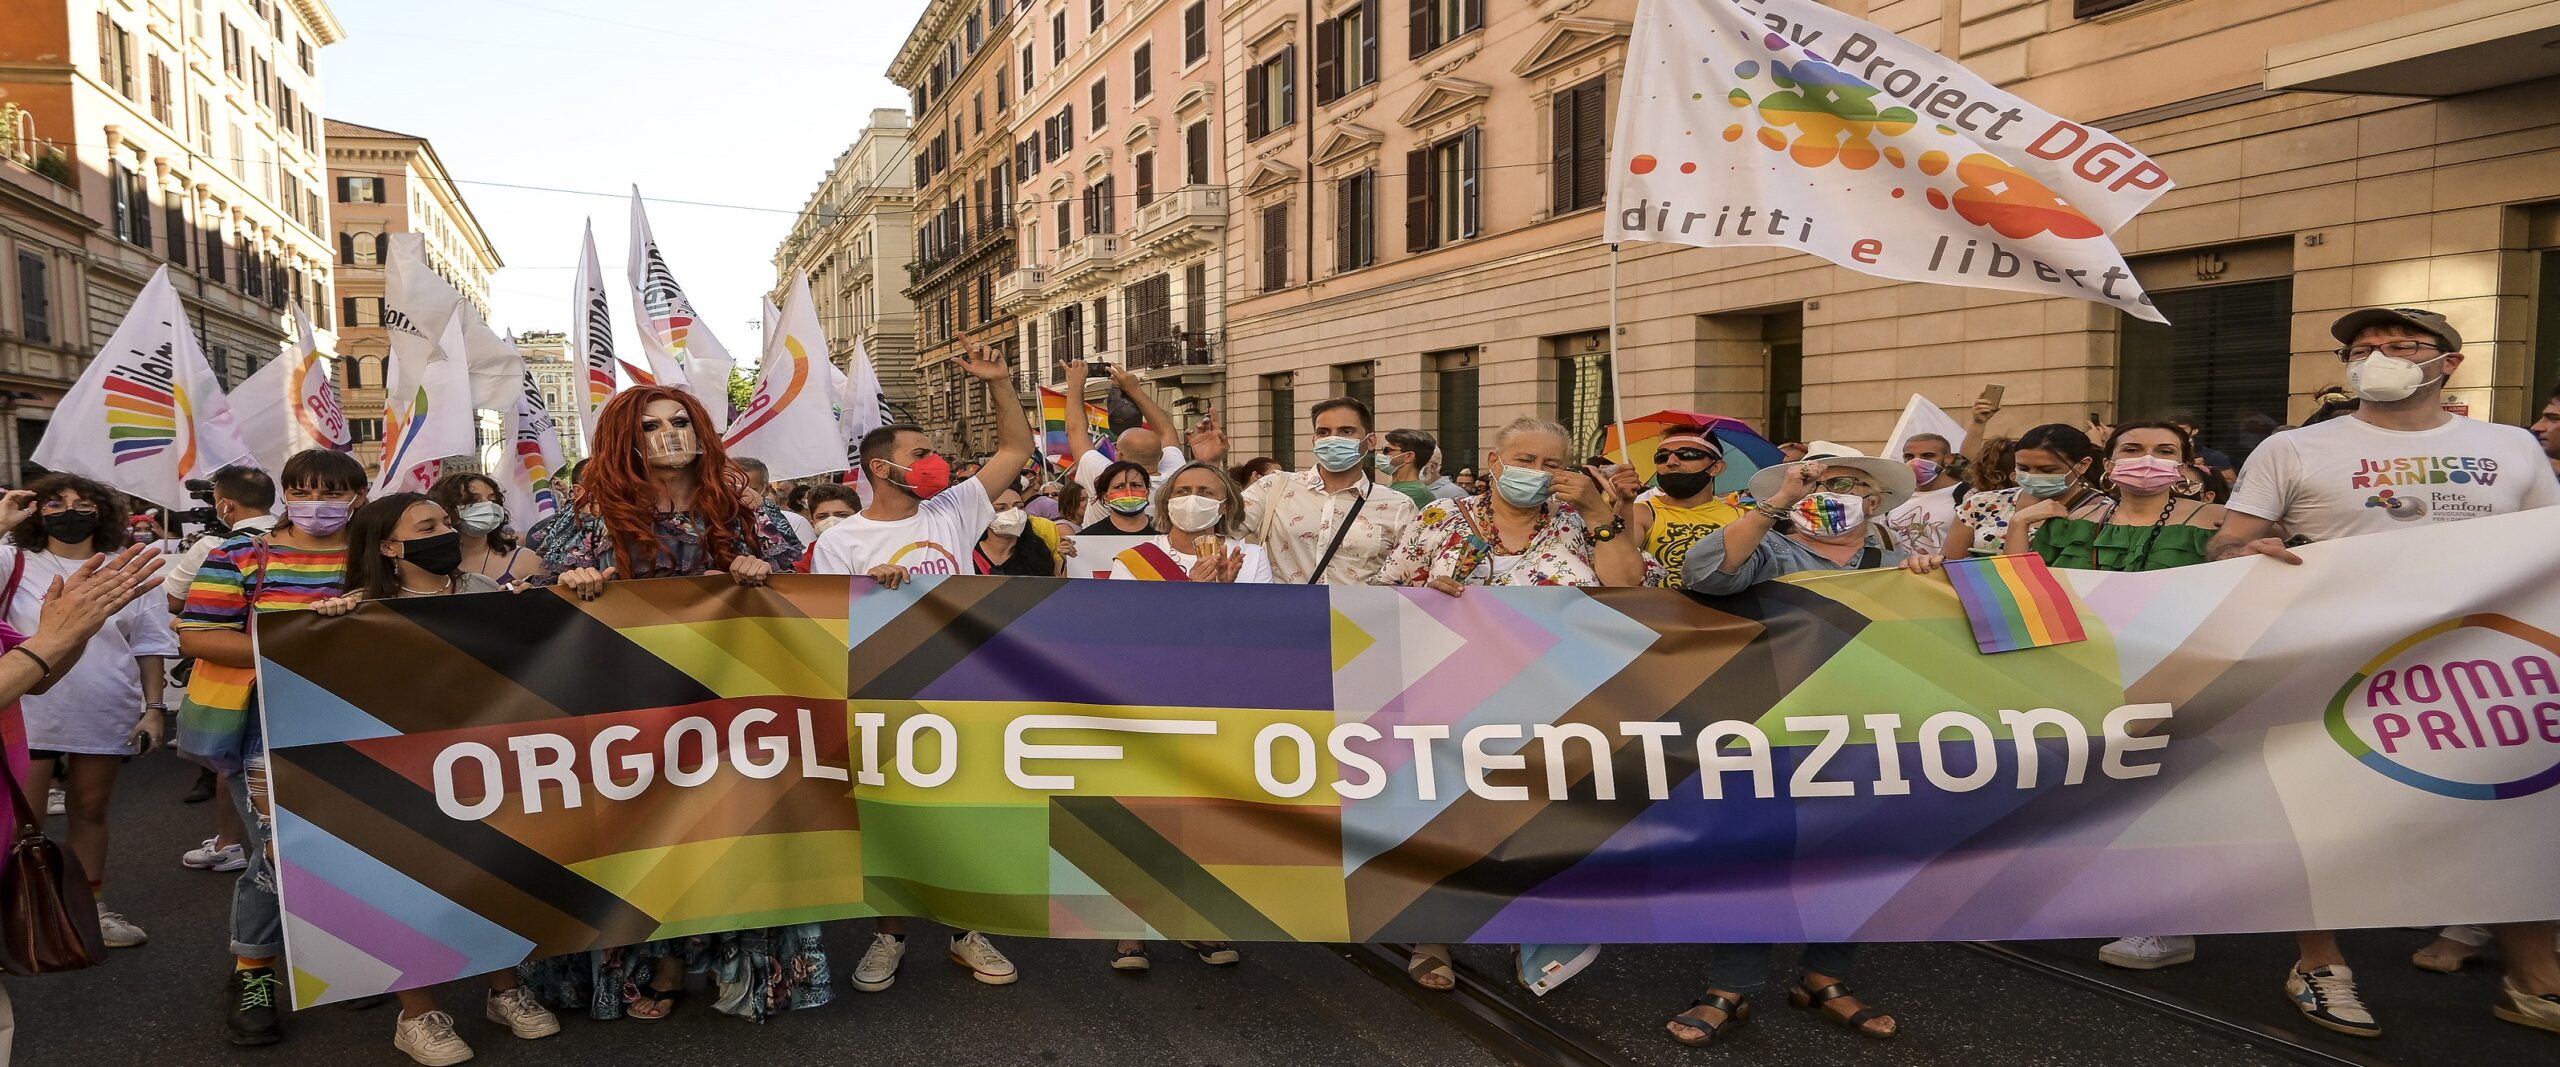 La Regione Lazio, sfilandosi dal Pride, non segue Orbán (semmai ArciLesbica)